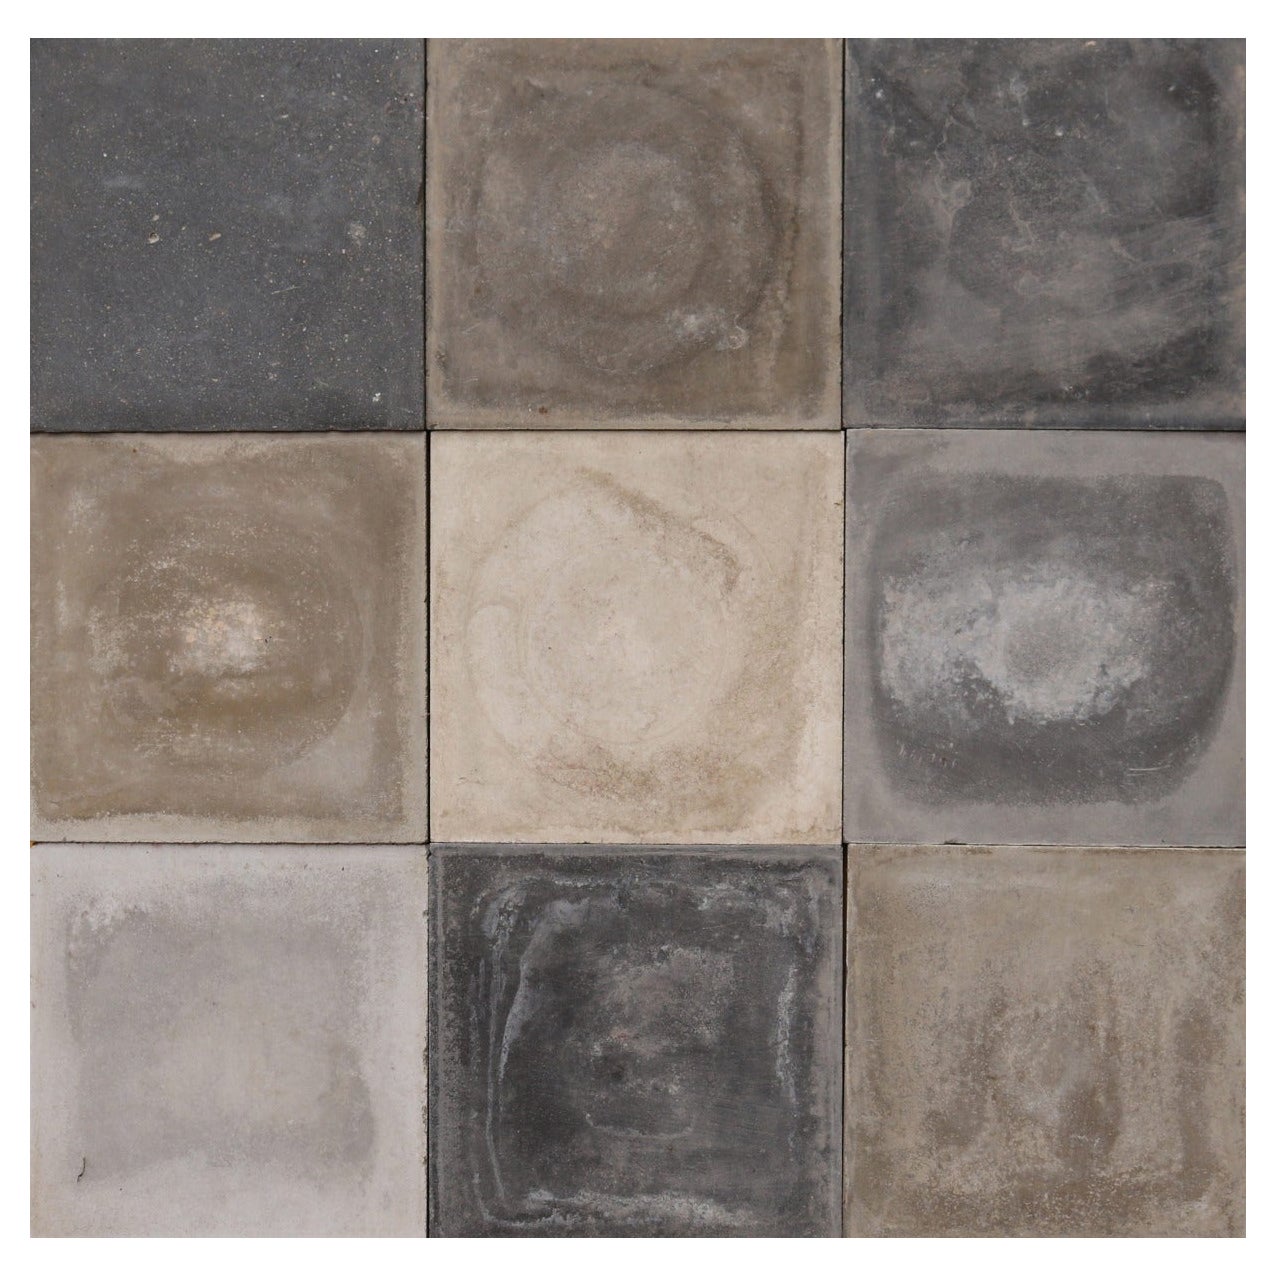 Zementschirme aus grauen, aufgearbeiteten Boden- oder Wandfliesen